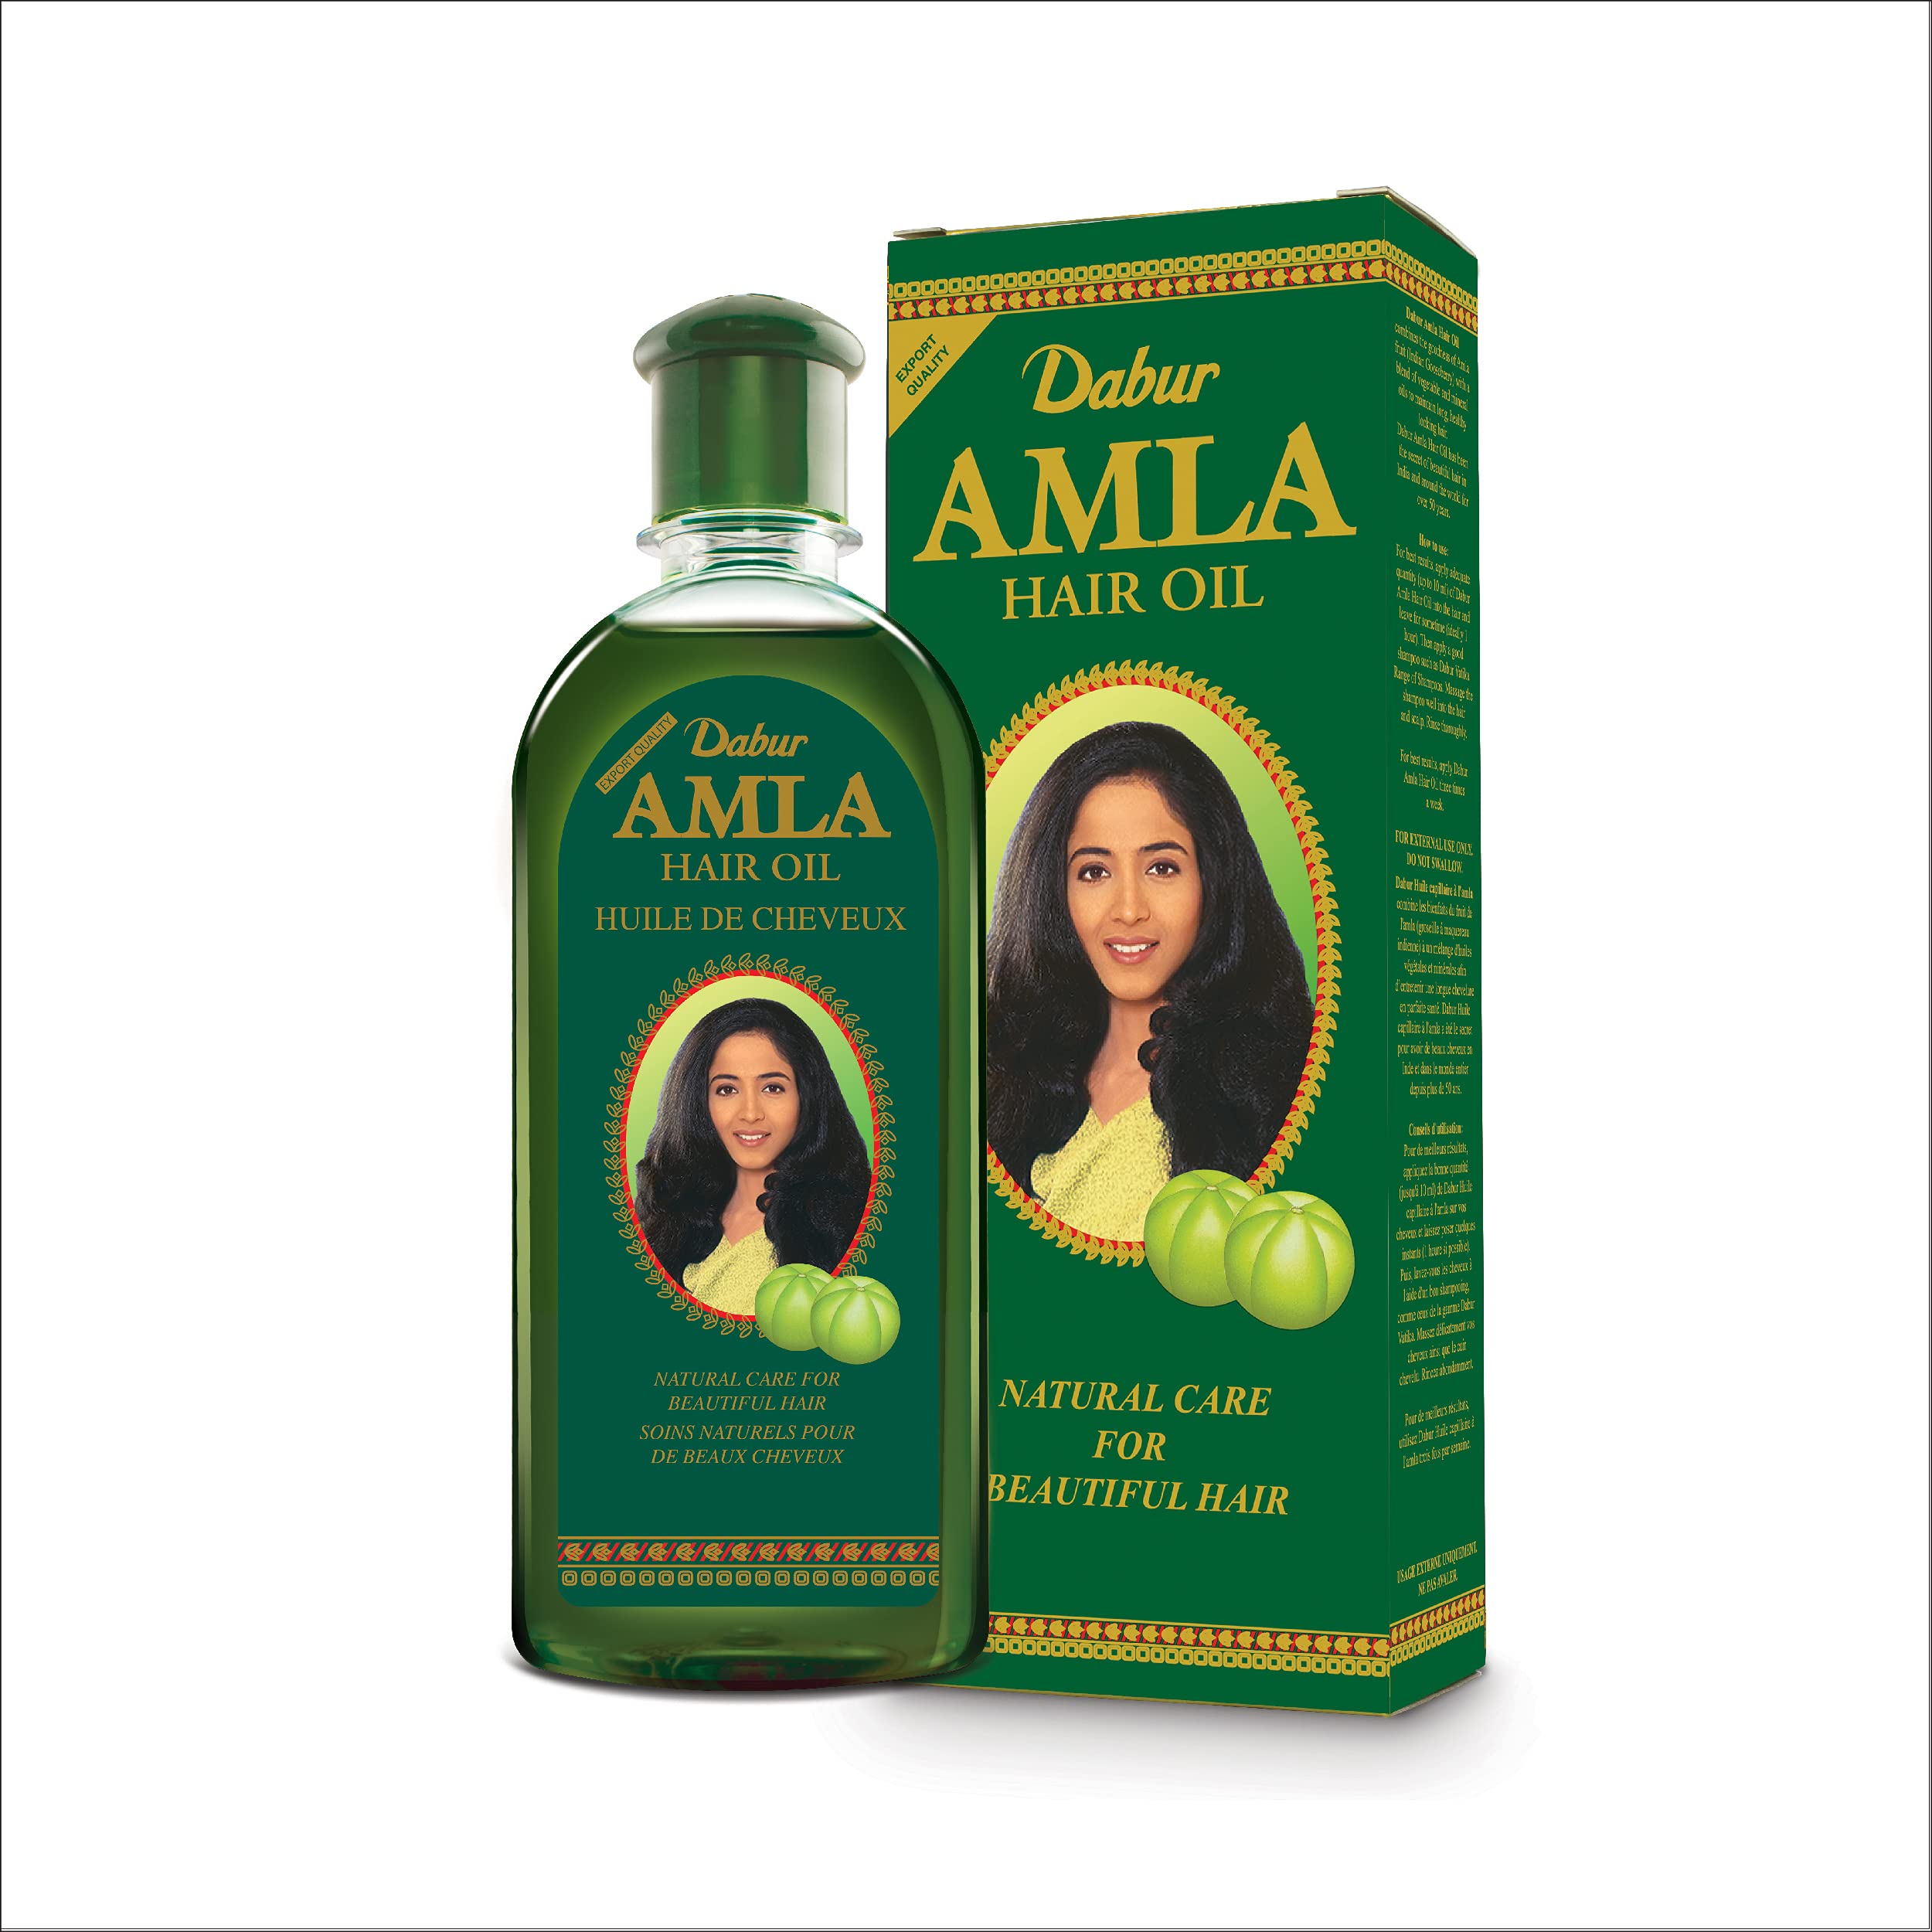 Dabur Amla Hair oil - Natural care for beautiful hair, 500ml - image 1 of 7